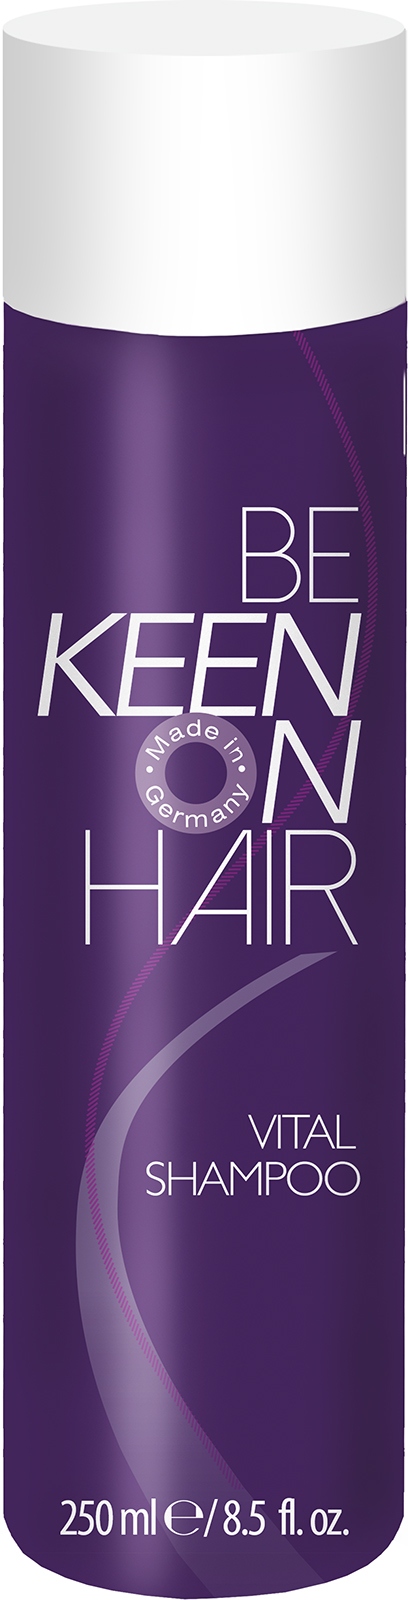 Шампуни для волос:  KEEN -  Шампунь против выпадения волос VITAL SHAMPOO (250 мл)